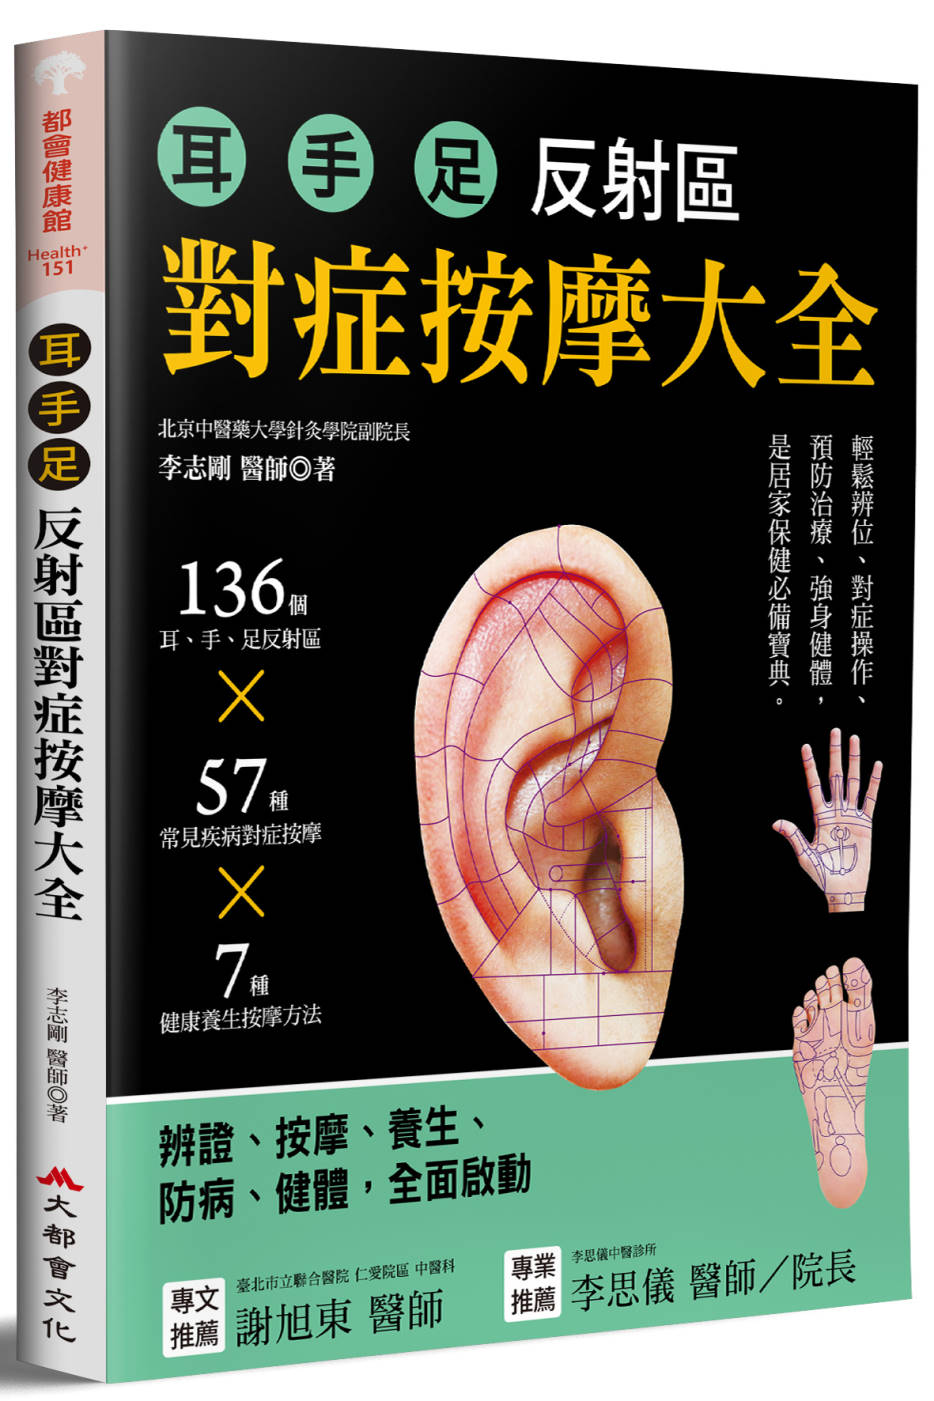 耳．手．足 反射區對症按摩大全：136個耳、手、足部反射區x57種常見疾病對症按摩x7種健康養生按摩方